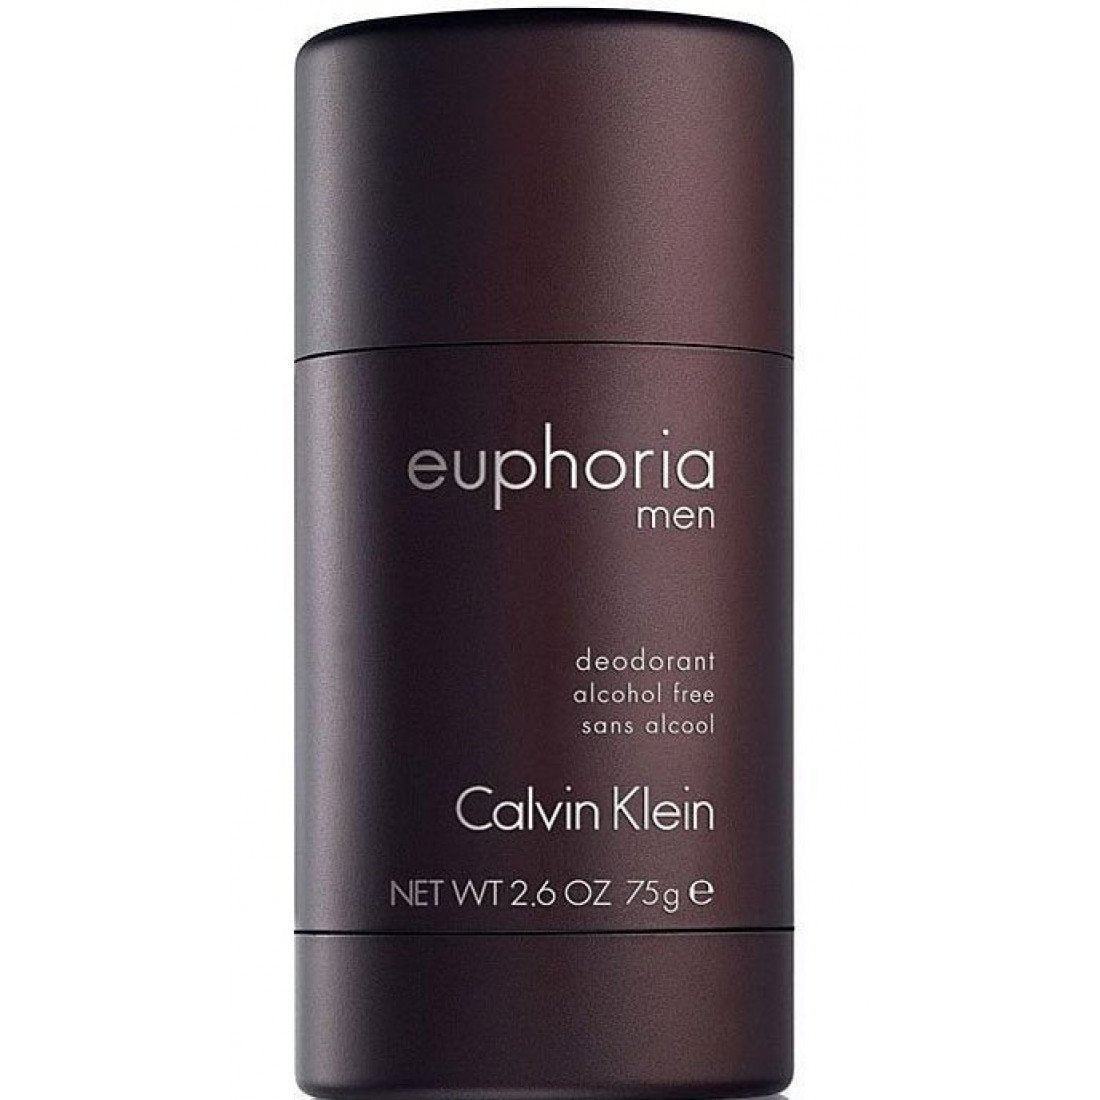 Euphoria Men Deodorant Stick by Calvin Klein - 75g